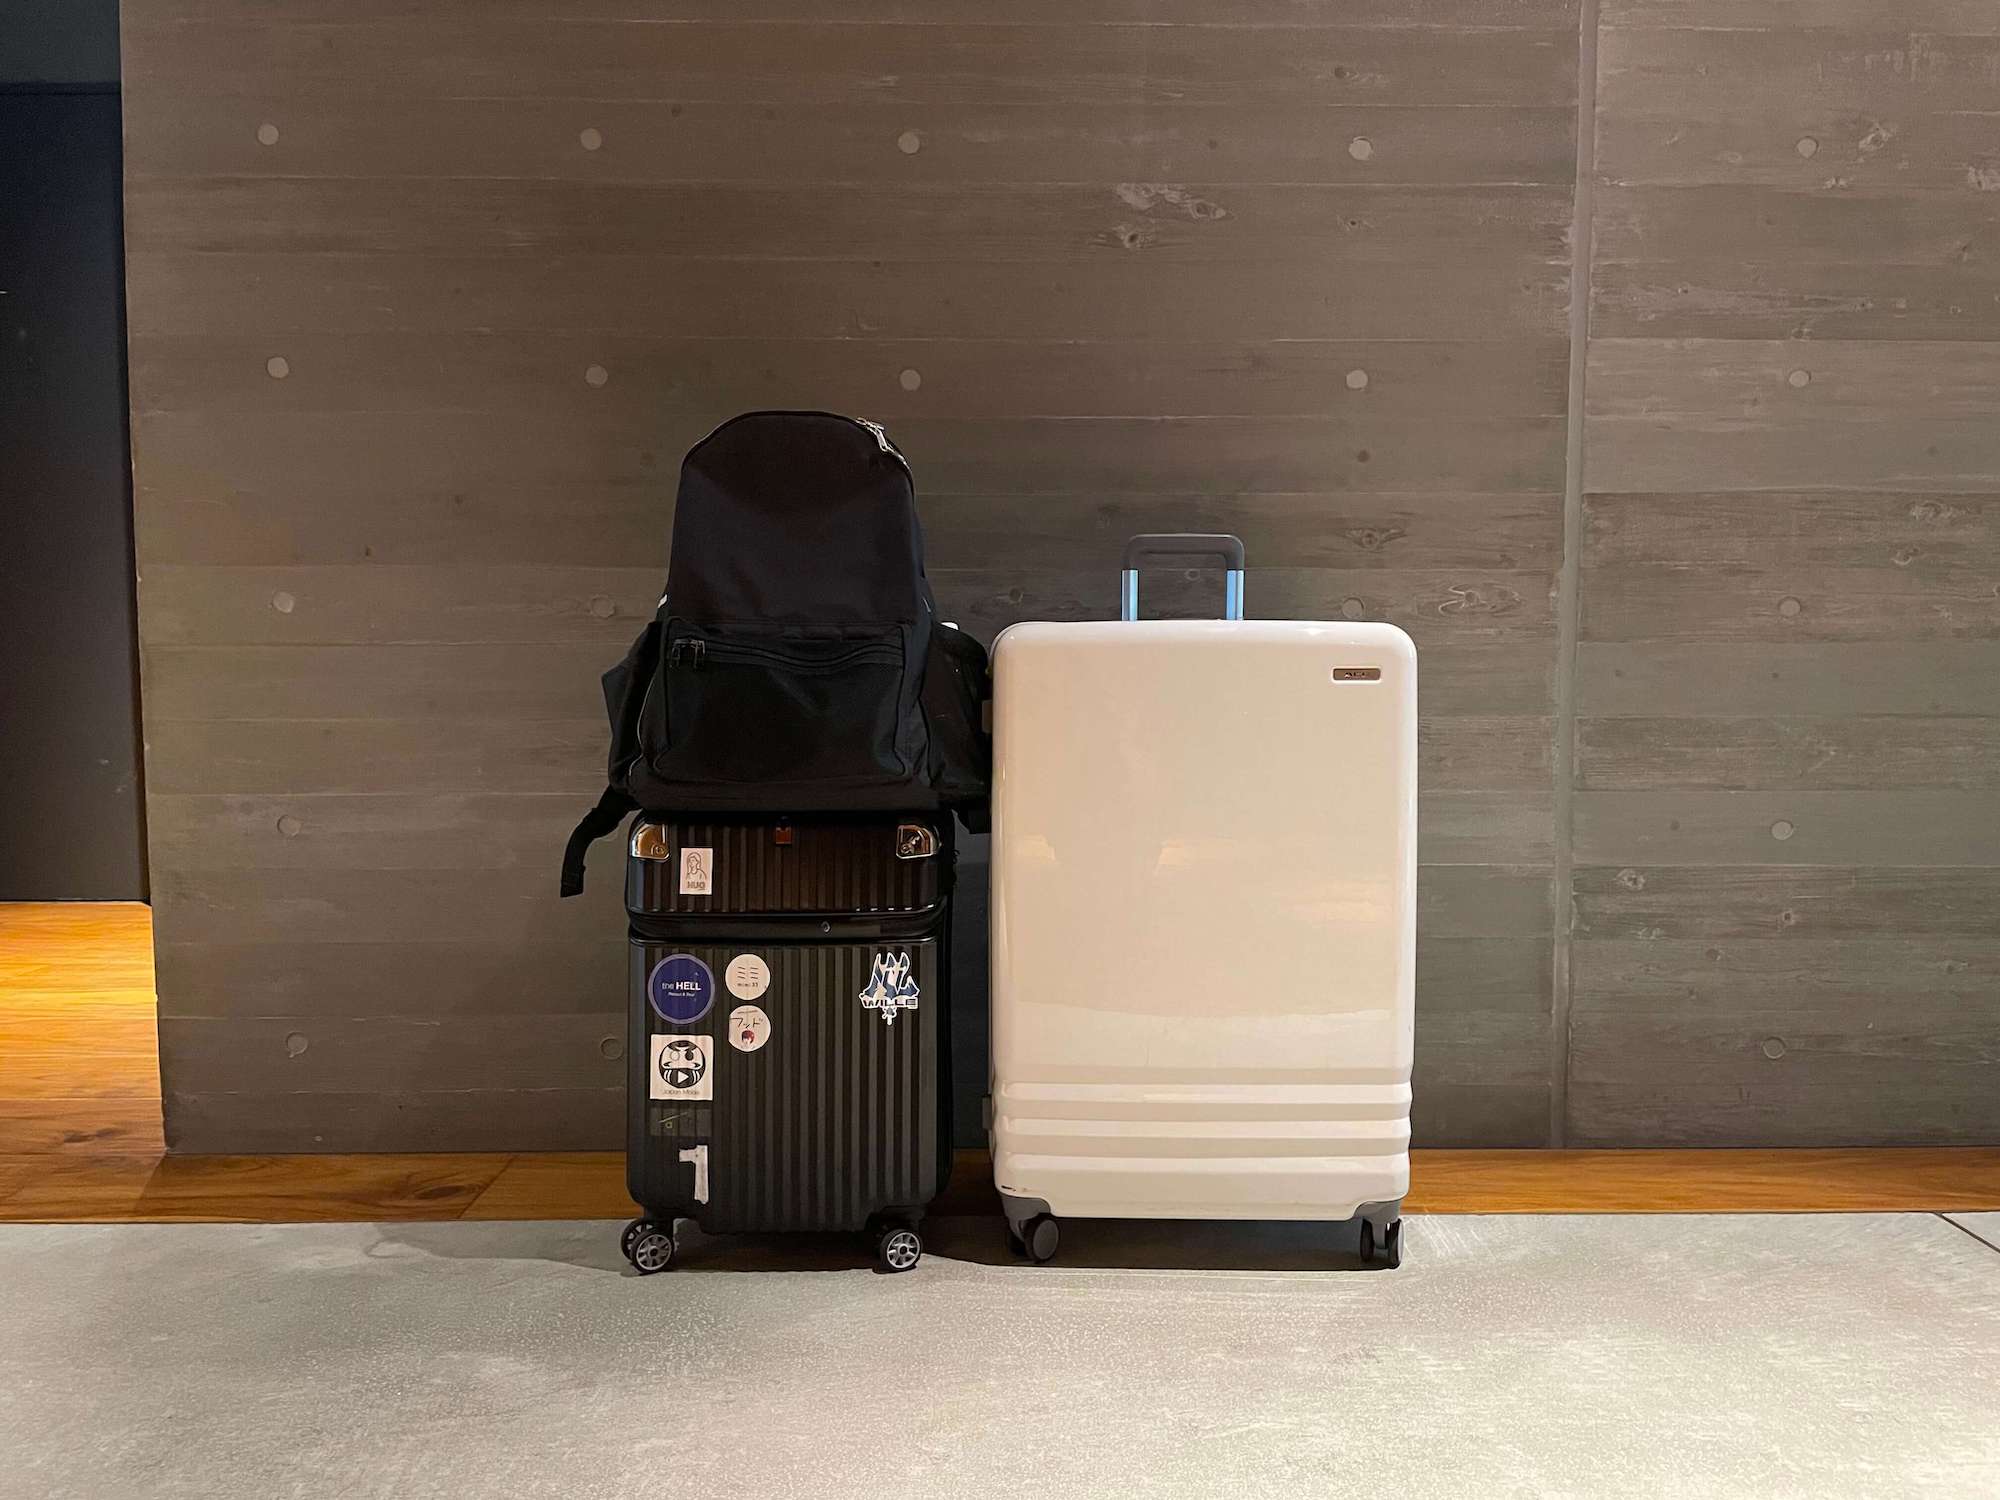 Azusaさんの手荷物はこちらの3つ。一週間の旅行サイズのスーツケースと機内持ち込みサイズのスーツケース、そして普段愛用しているリュックです。